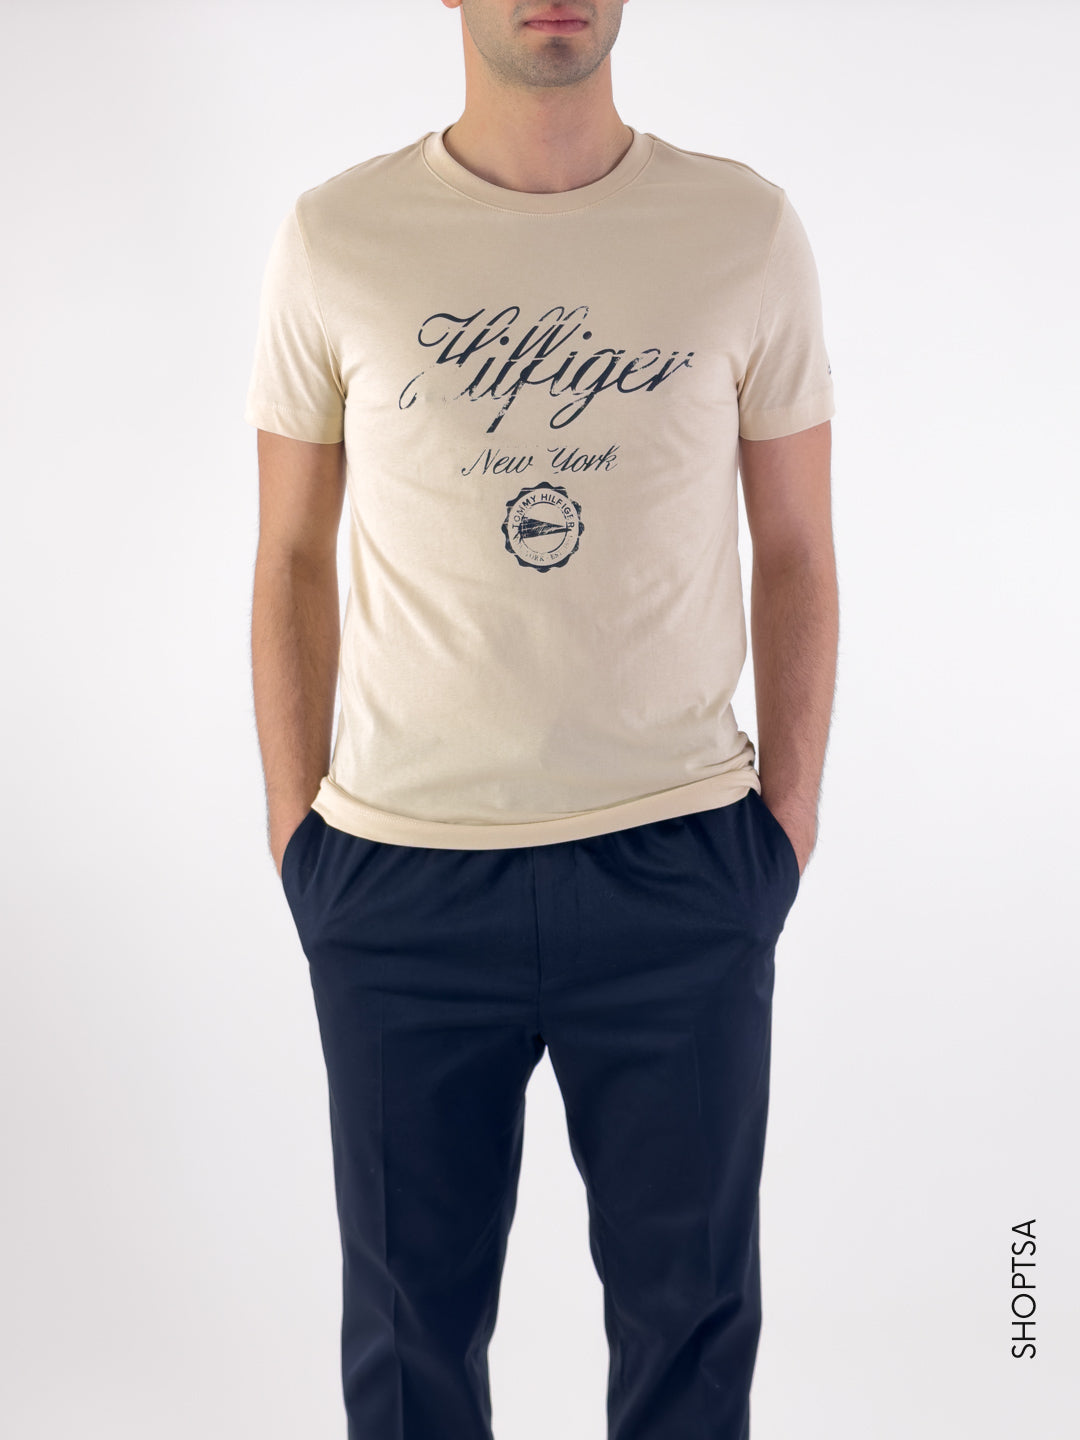 Vintage inspired t-shirt - Tommy Hilfiger